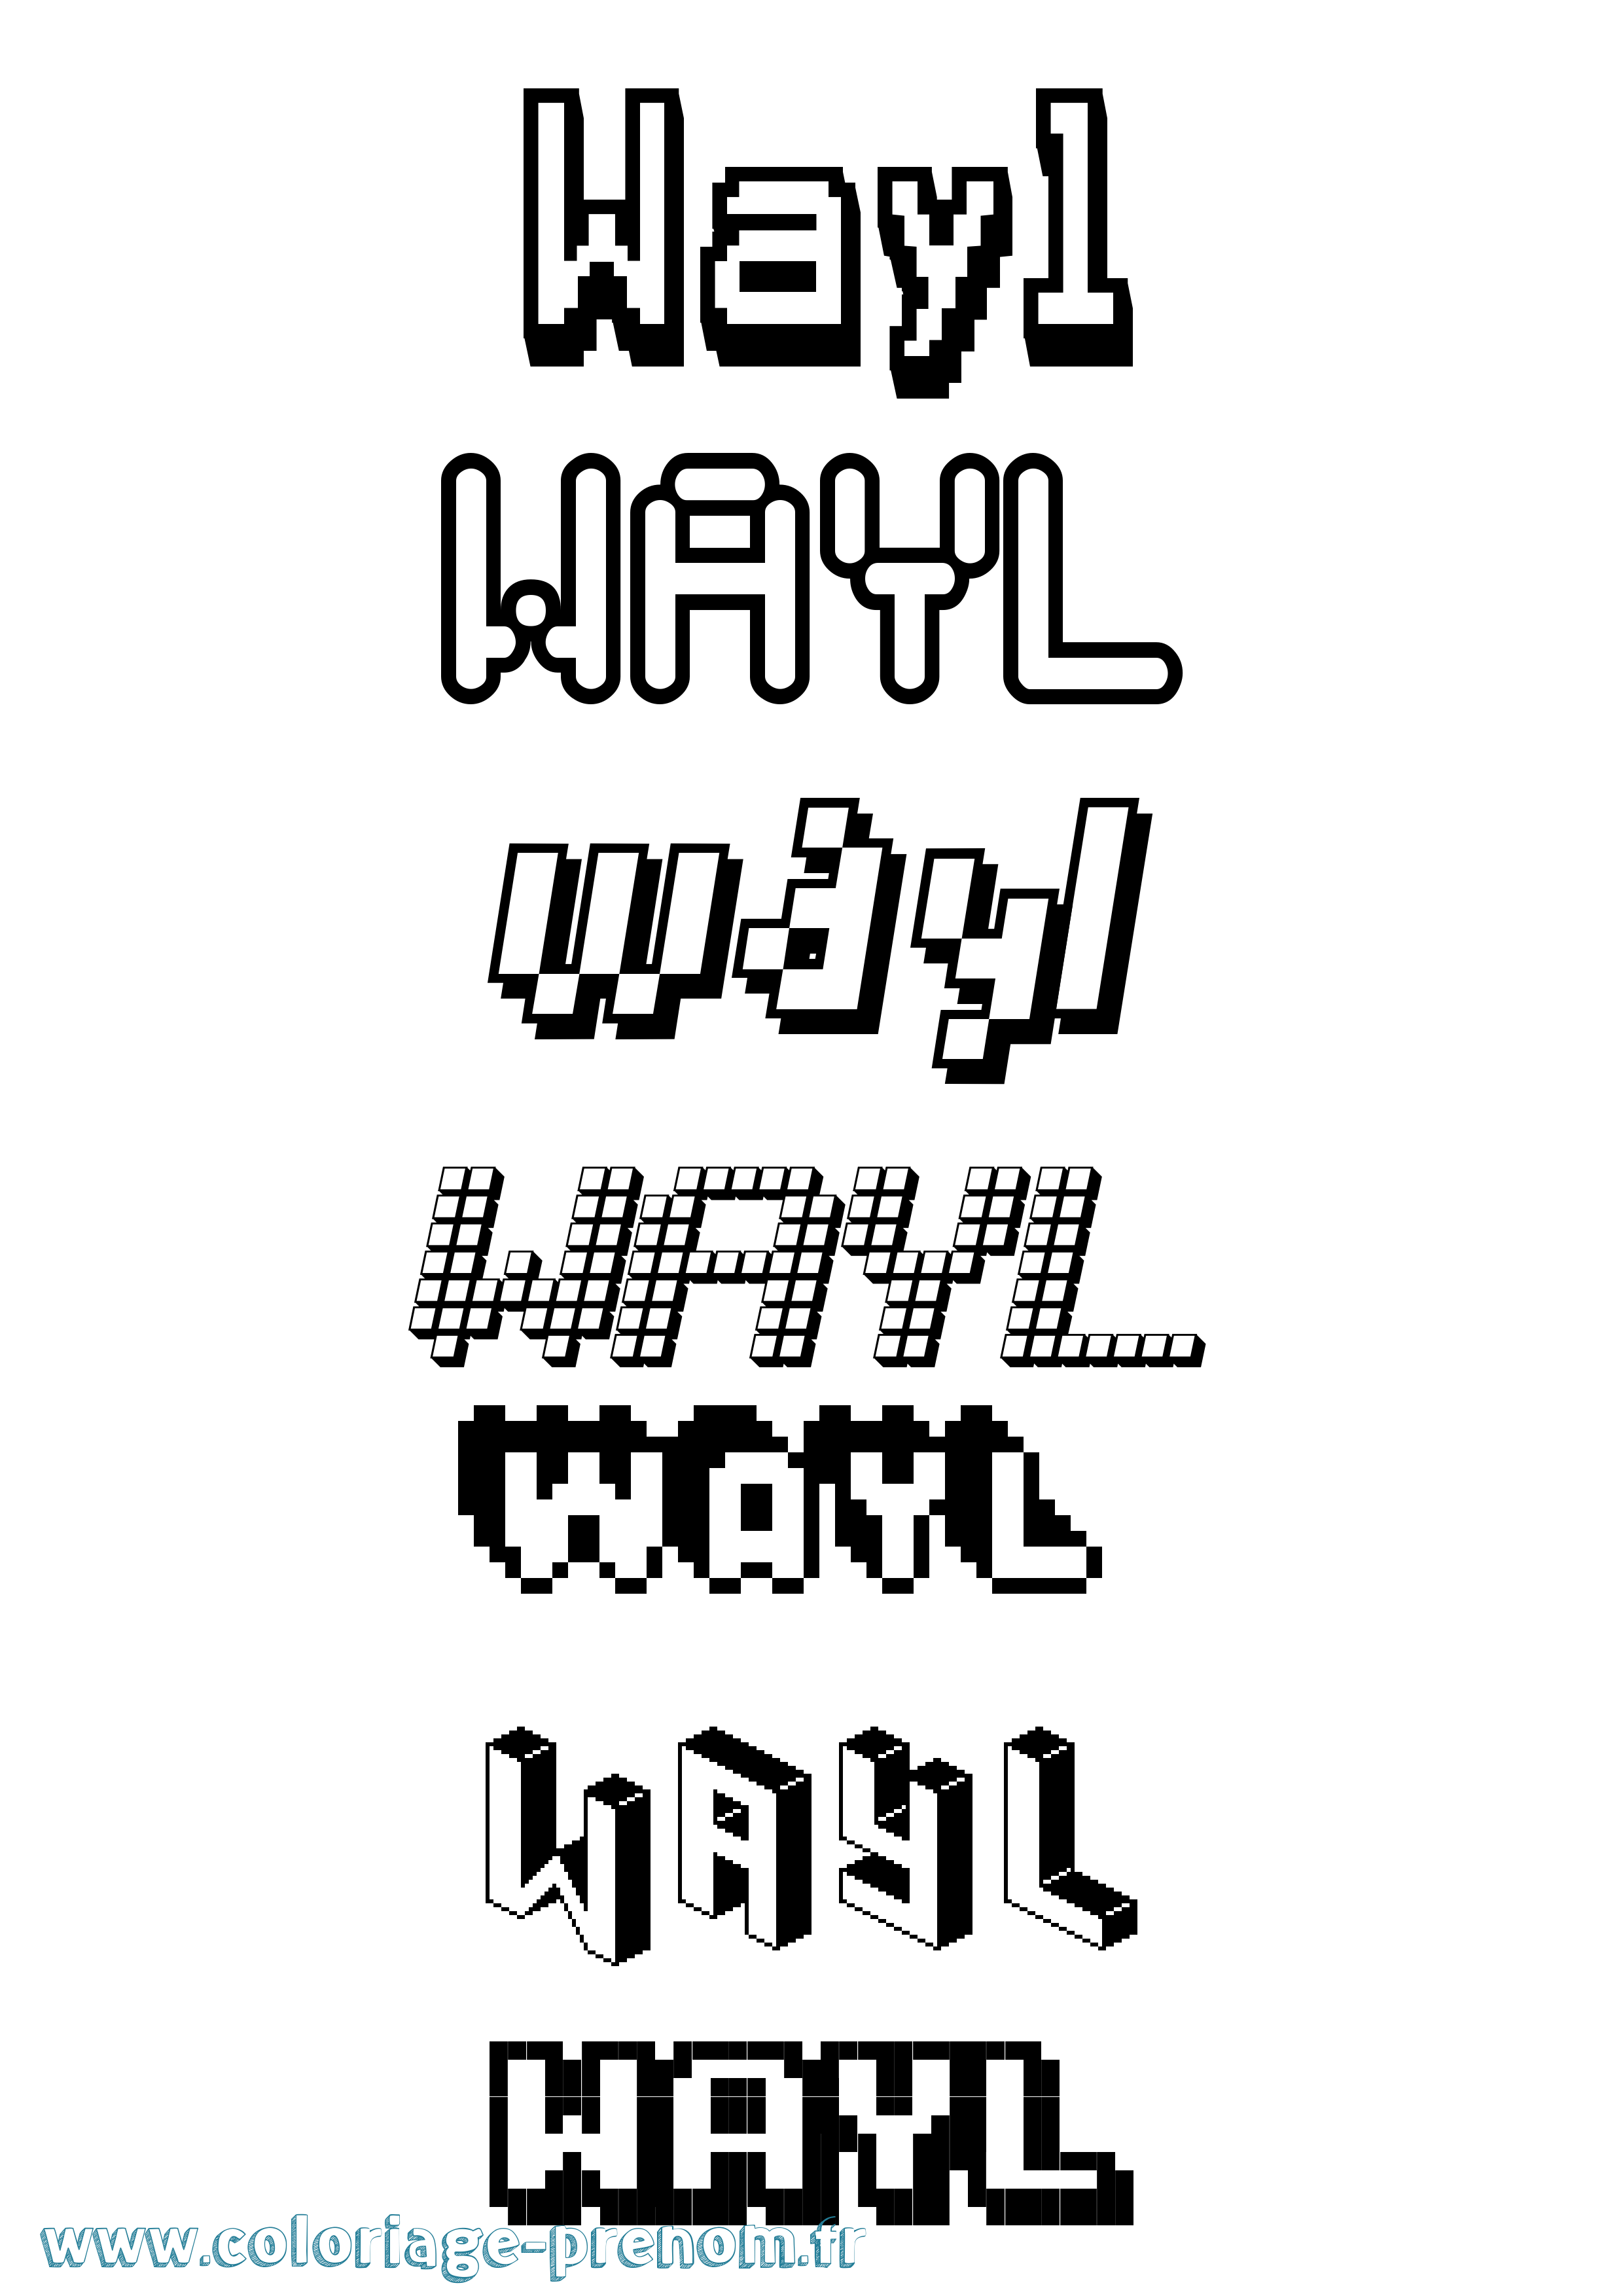 Coloriage prénom Wayl Pixel